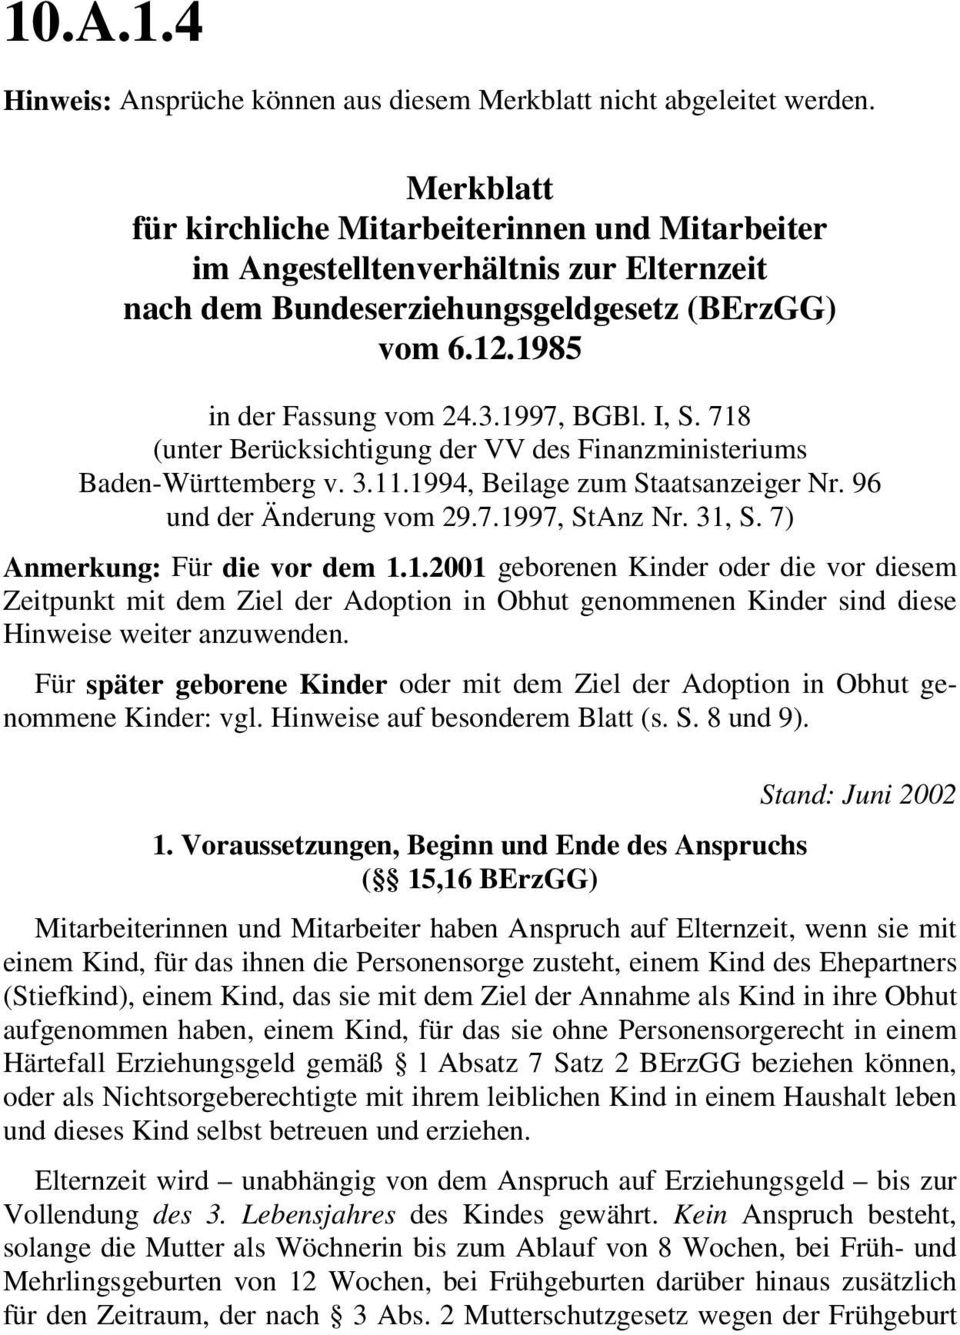 718 (unter Berücksichtigung der VV des Finanzministeriums Baden-Württemberg v. 3.11.1994, Beilage zum Staatsanzeiger Nr. 96 und der Änderung vom 29.7.1997, StAnz Nr. 31, S.